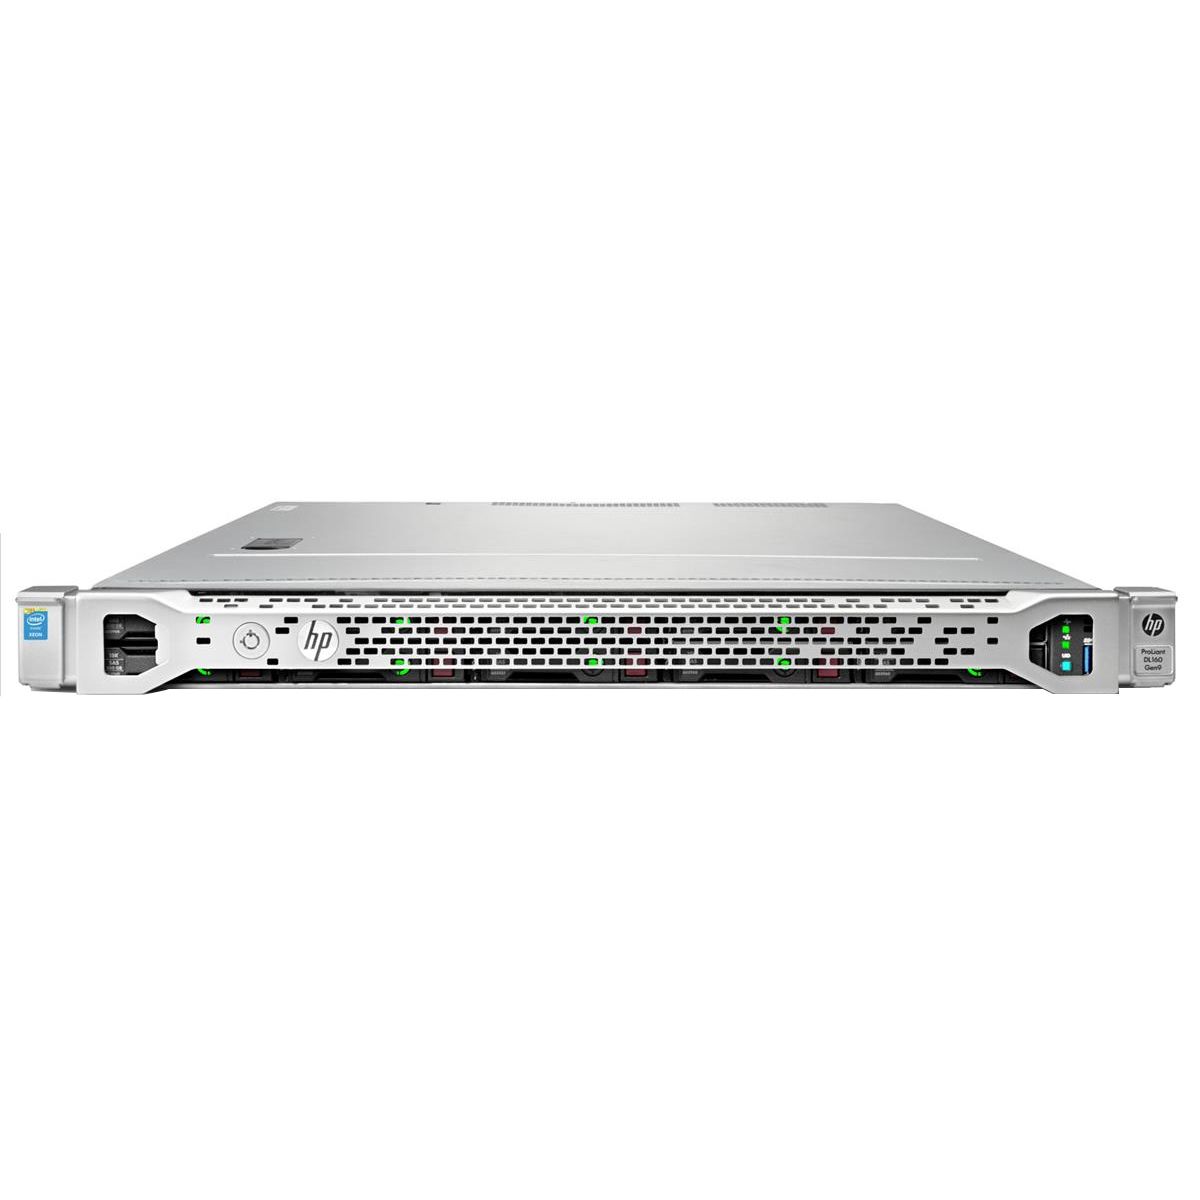  Server dedicat HP DL160 Gen9 4LFF, 2 x E5-2680v4, 8 x 8GB 2Rx4 PC4-24000P-R,  2 x 900W